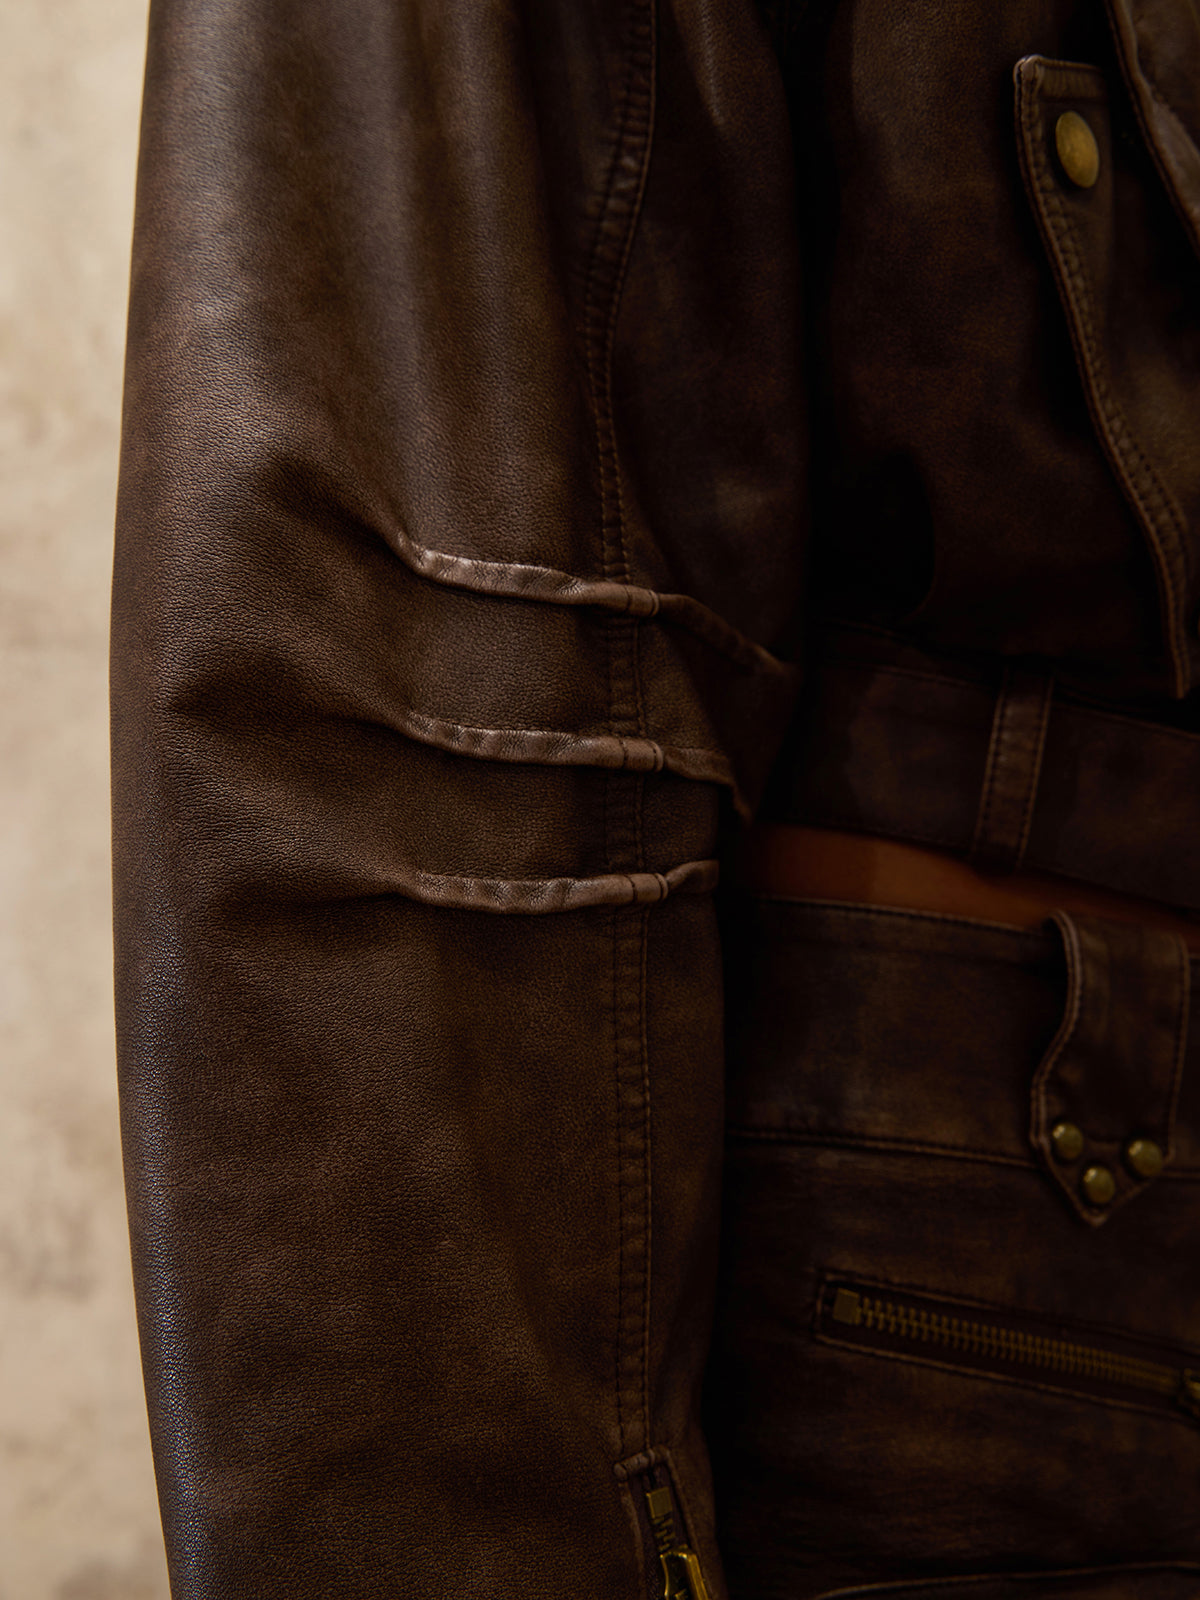 Personsoul Retro Blouson Leather Jacket